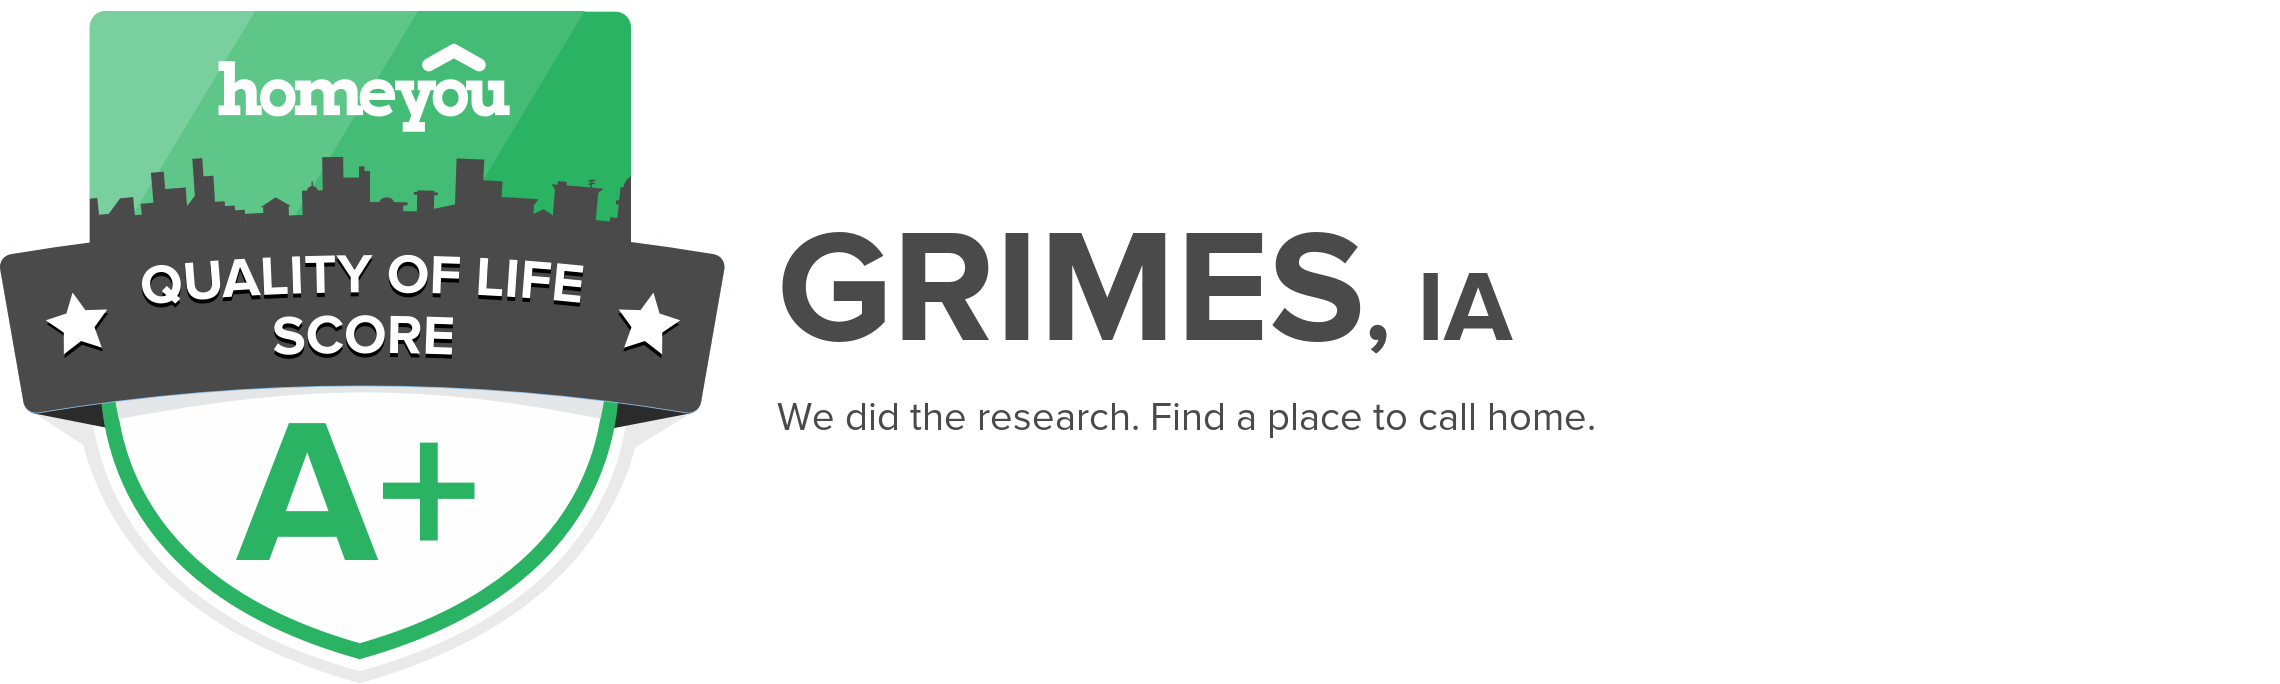 Grimes, IA